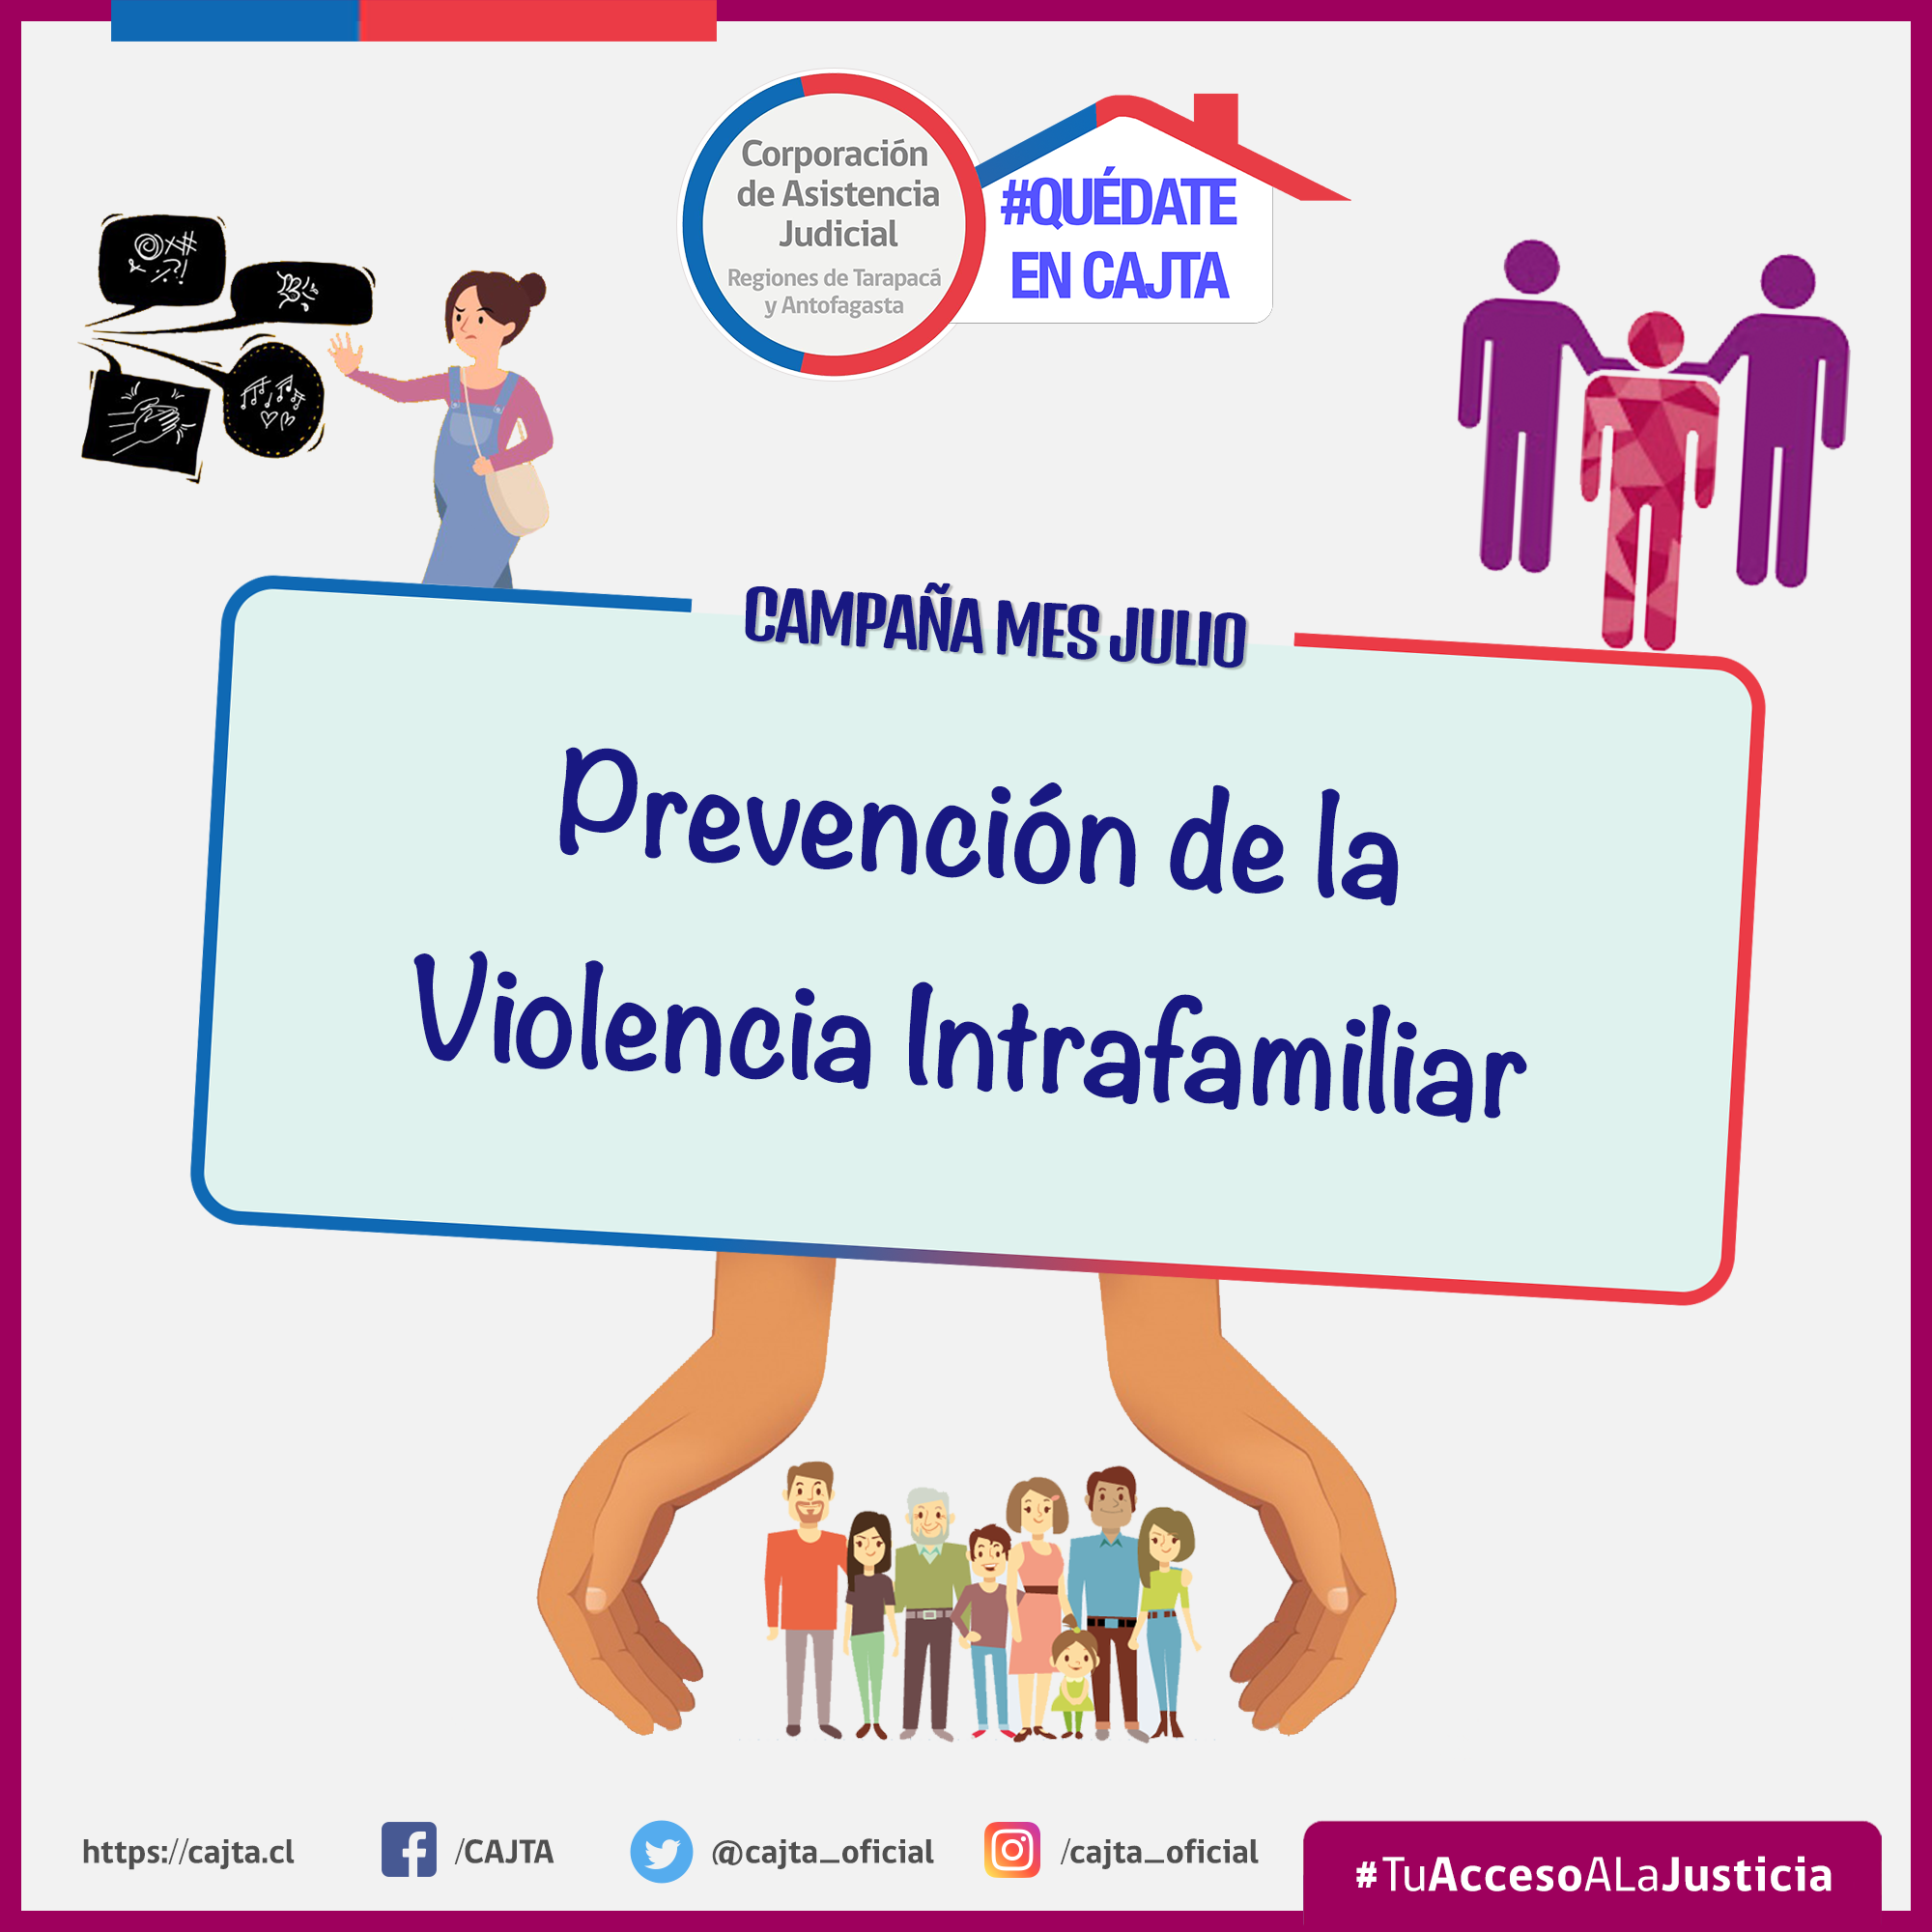 Julio mes de la campaña: “Prevención de la Violencia Intrafamiliar”